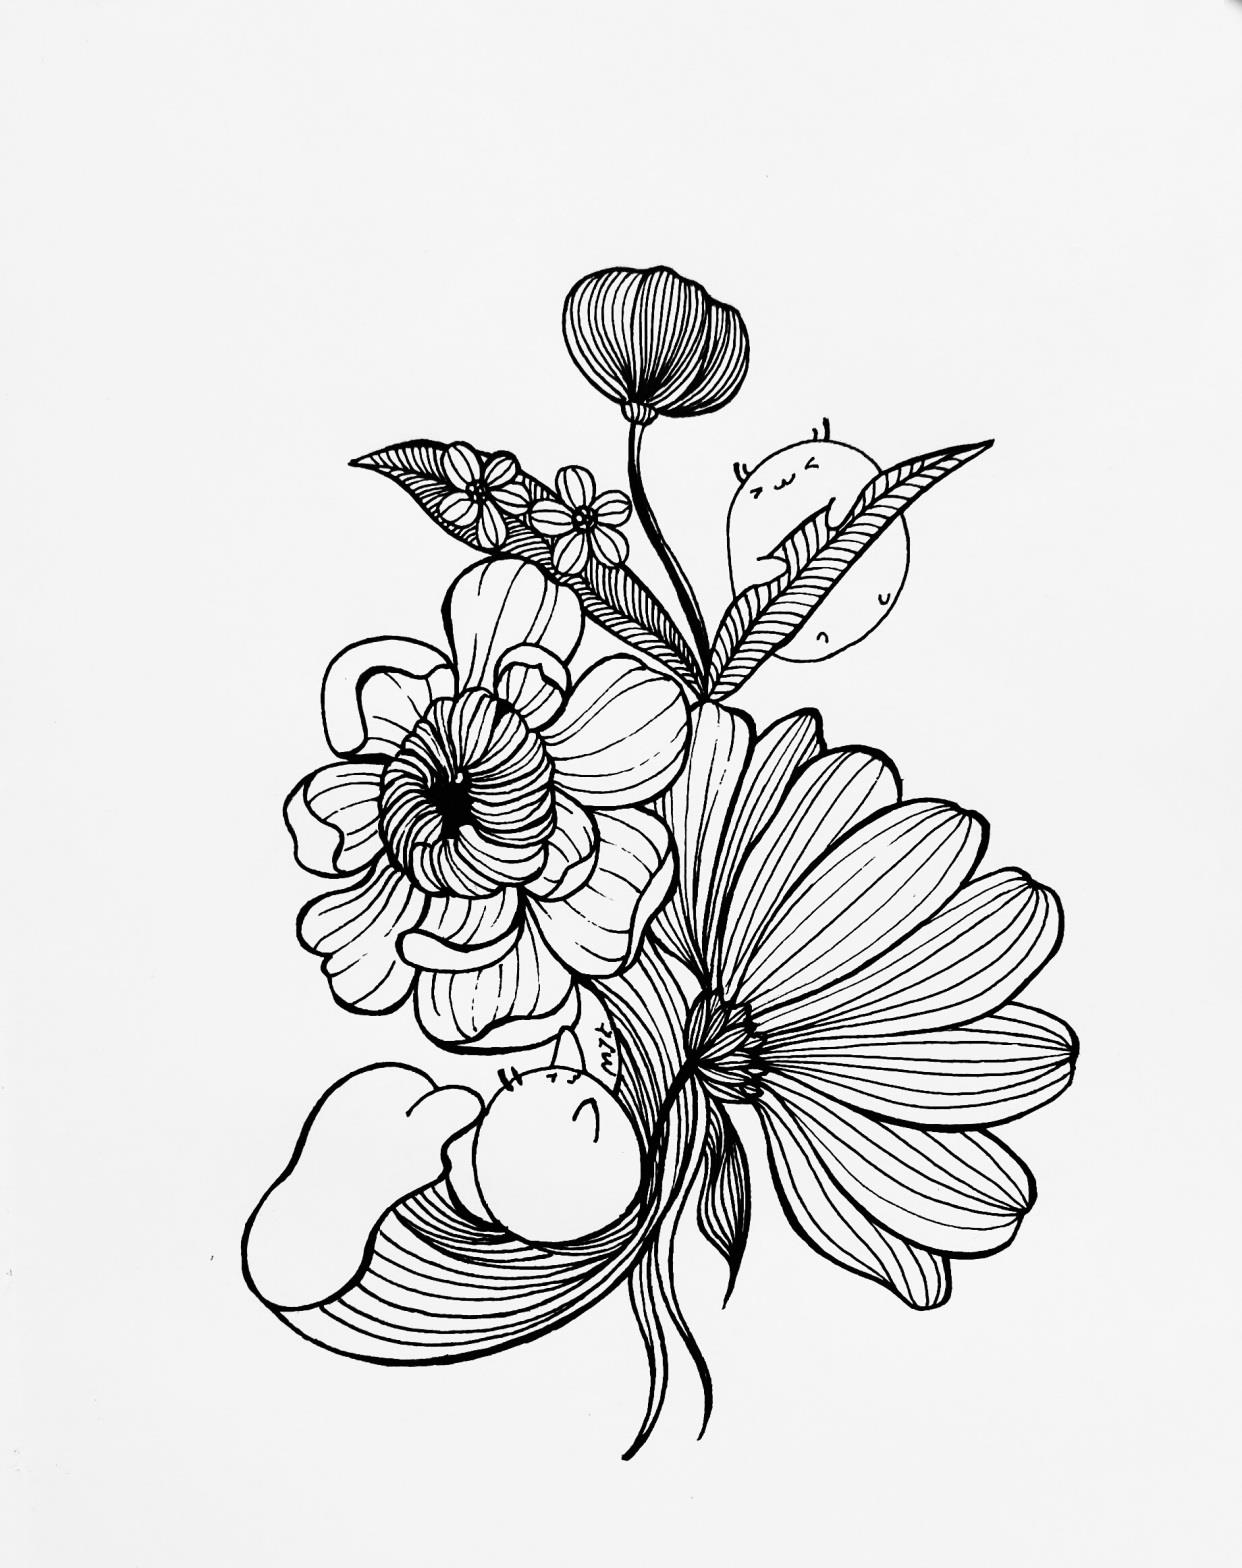 第一步:用铅笔简单地画出构图,标出花朵,叶子,海浪和小白的位置